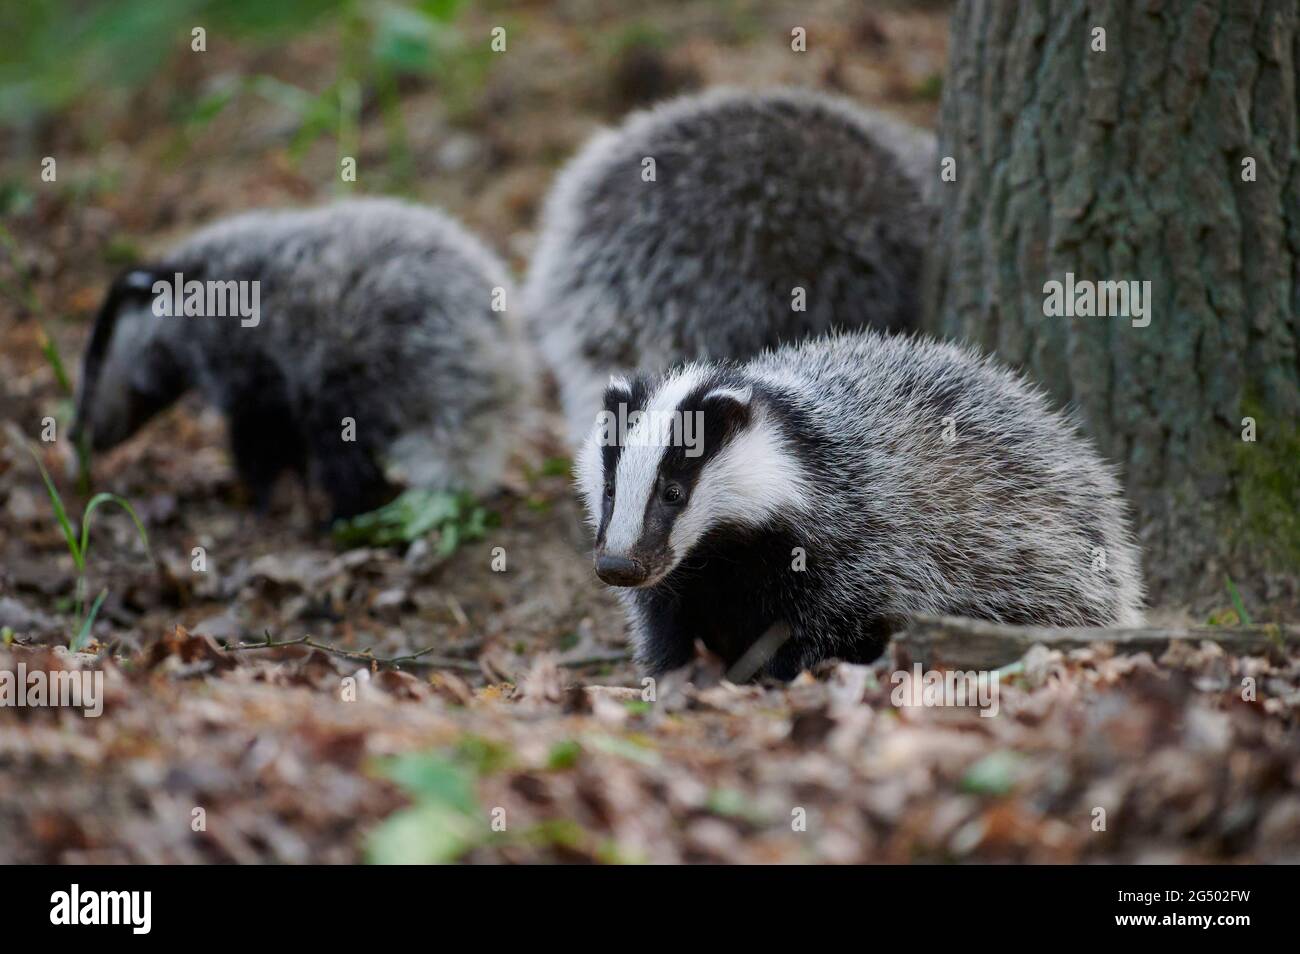 Three young European Badger cubs exploring the area around their den Stock Photo